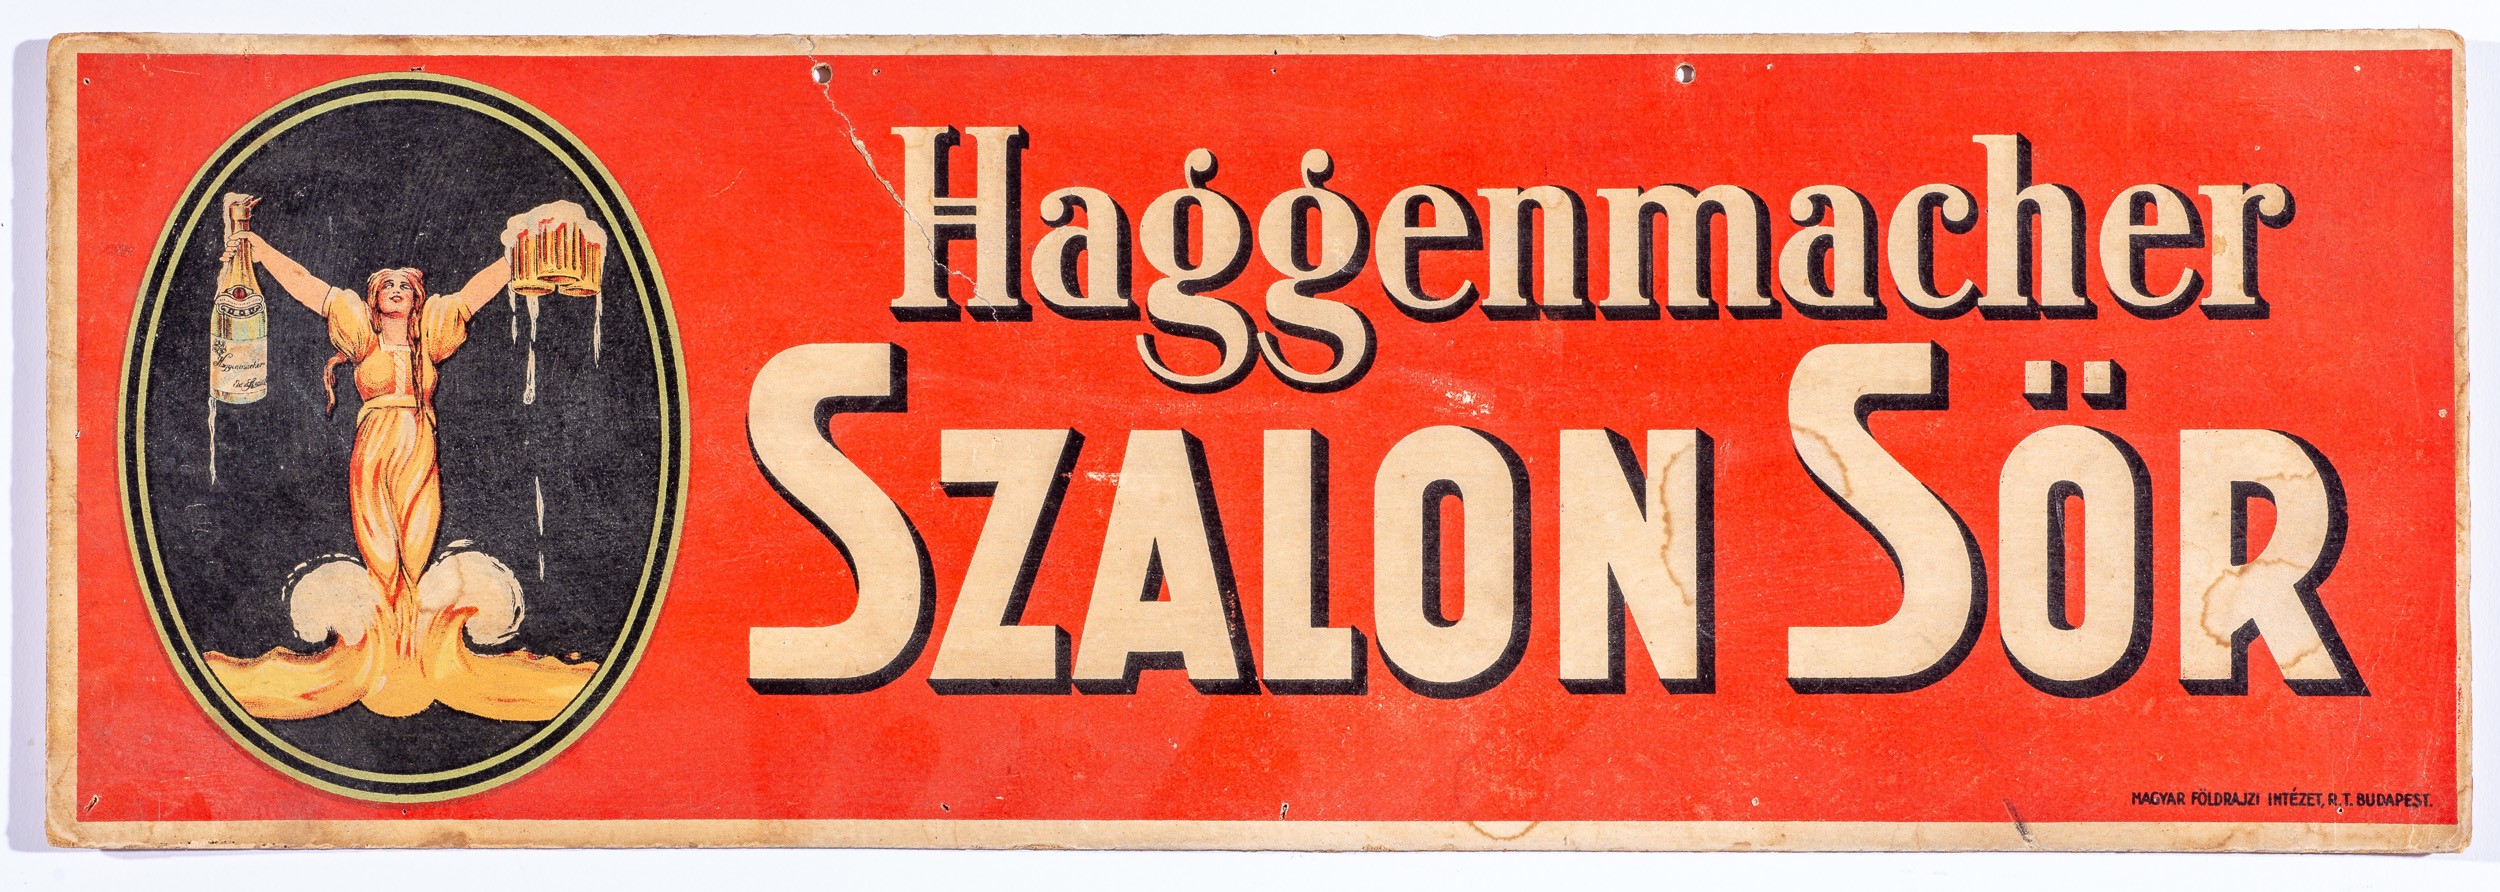 Haggenmacher szalon sör,szal.plak. (Söripari Emléktár - Dreher Sörmúzeum CC BY-NC-SA)